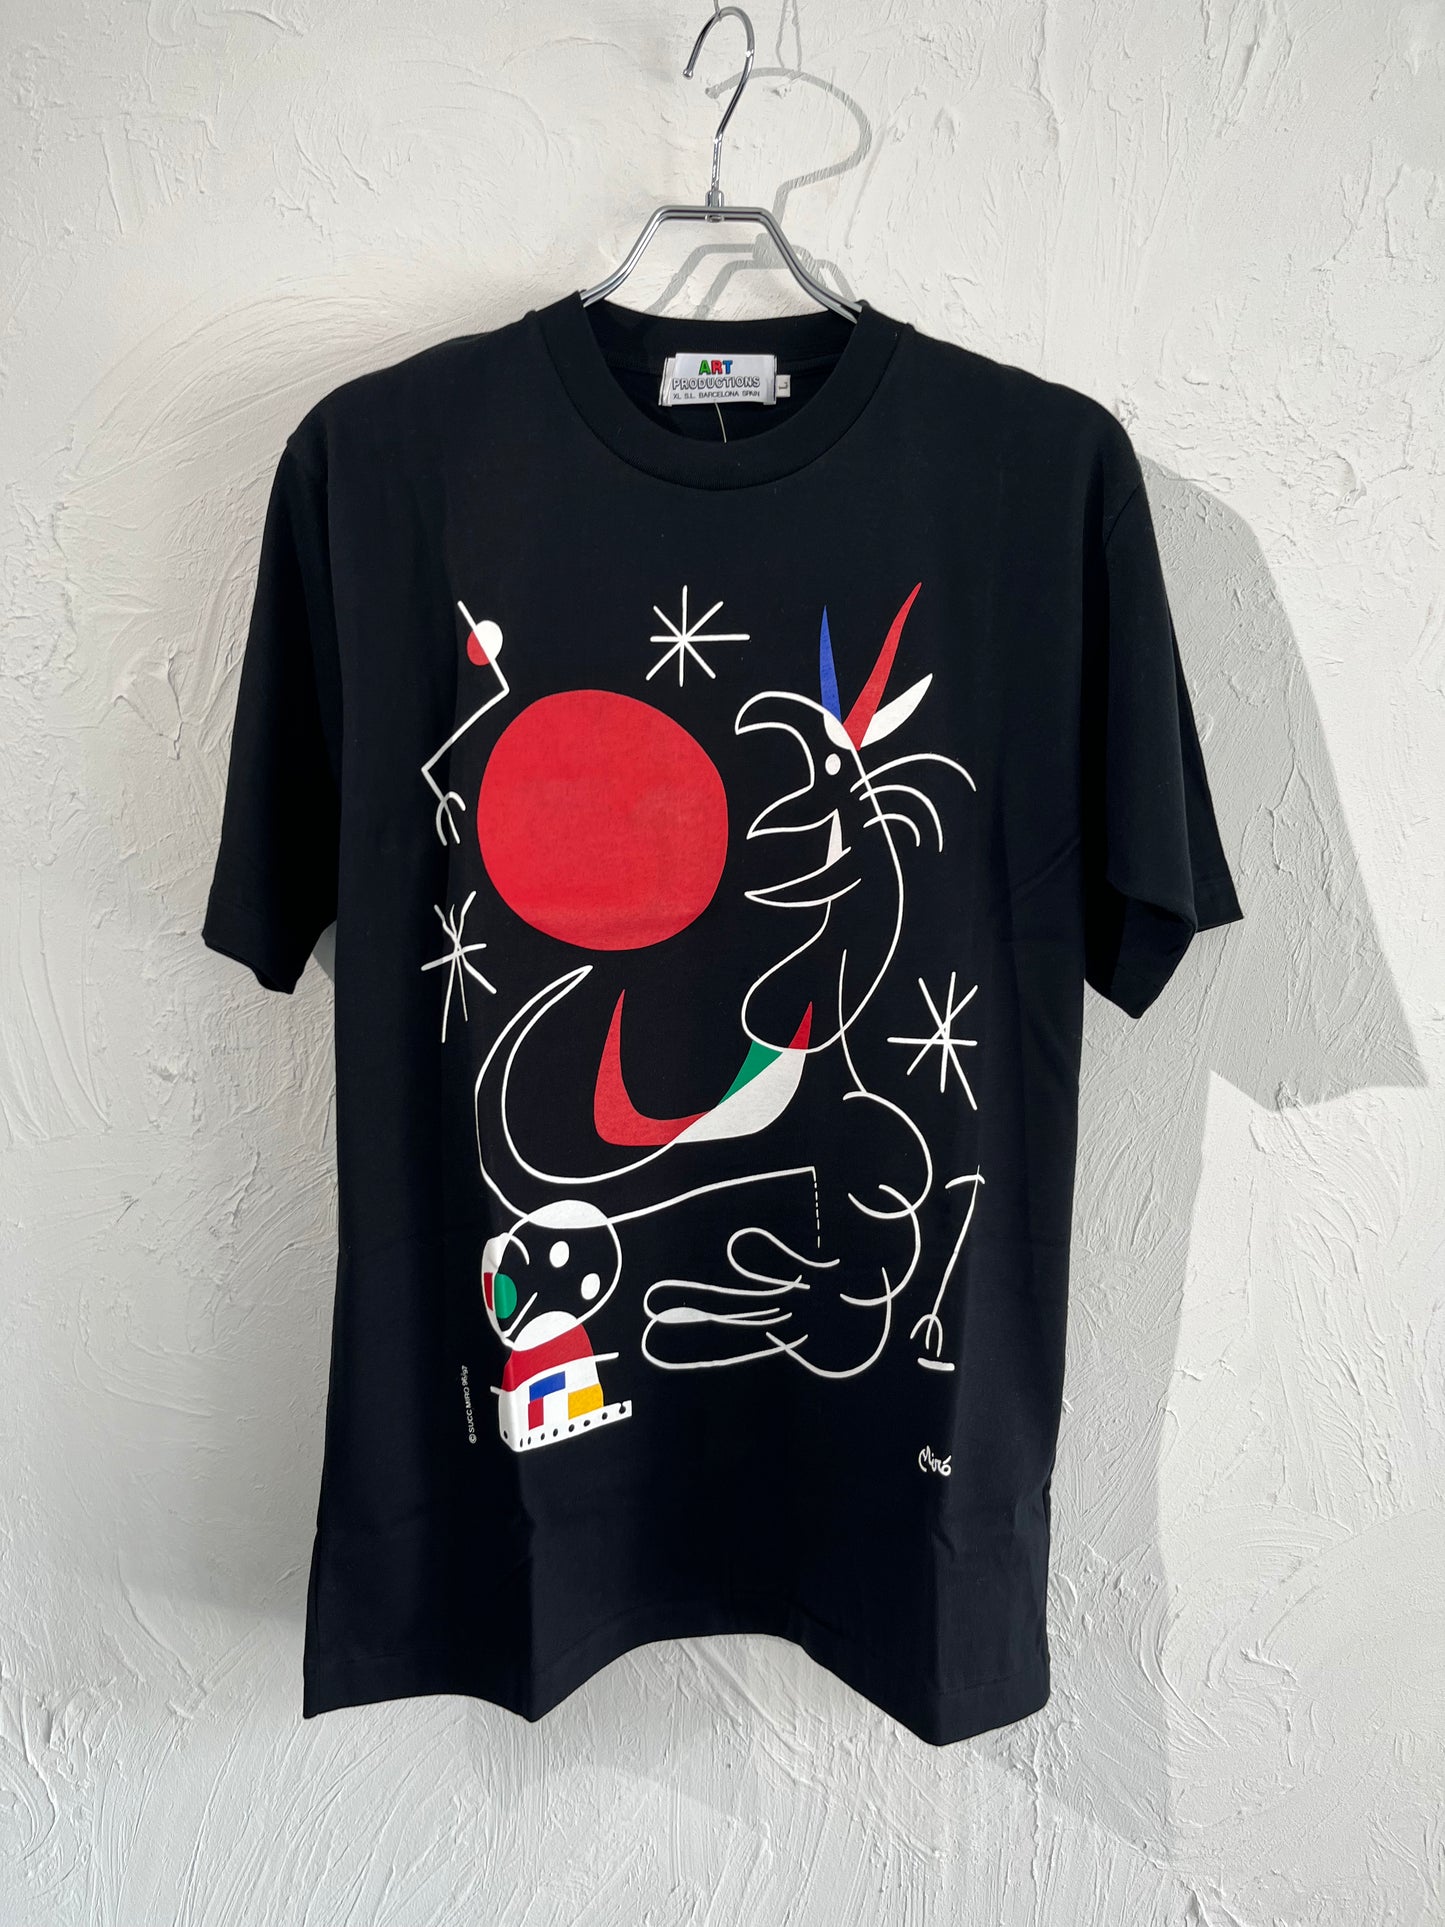 90s Joan Miró art tee